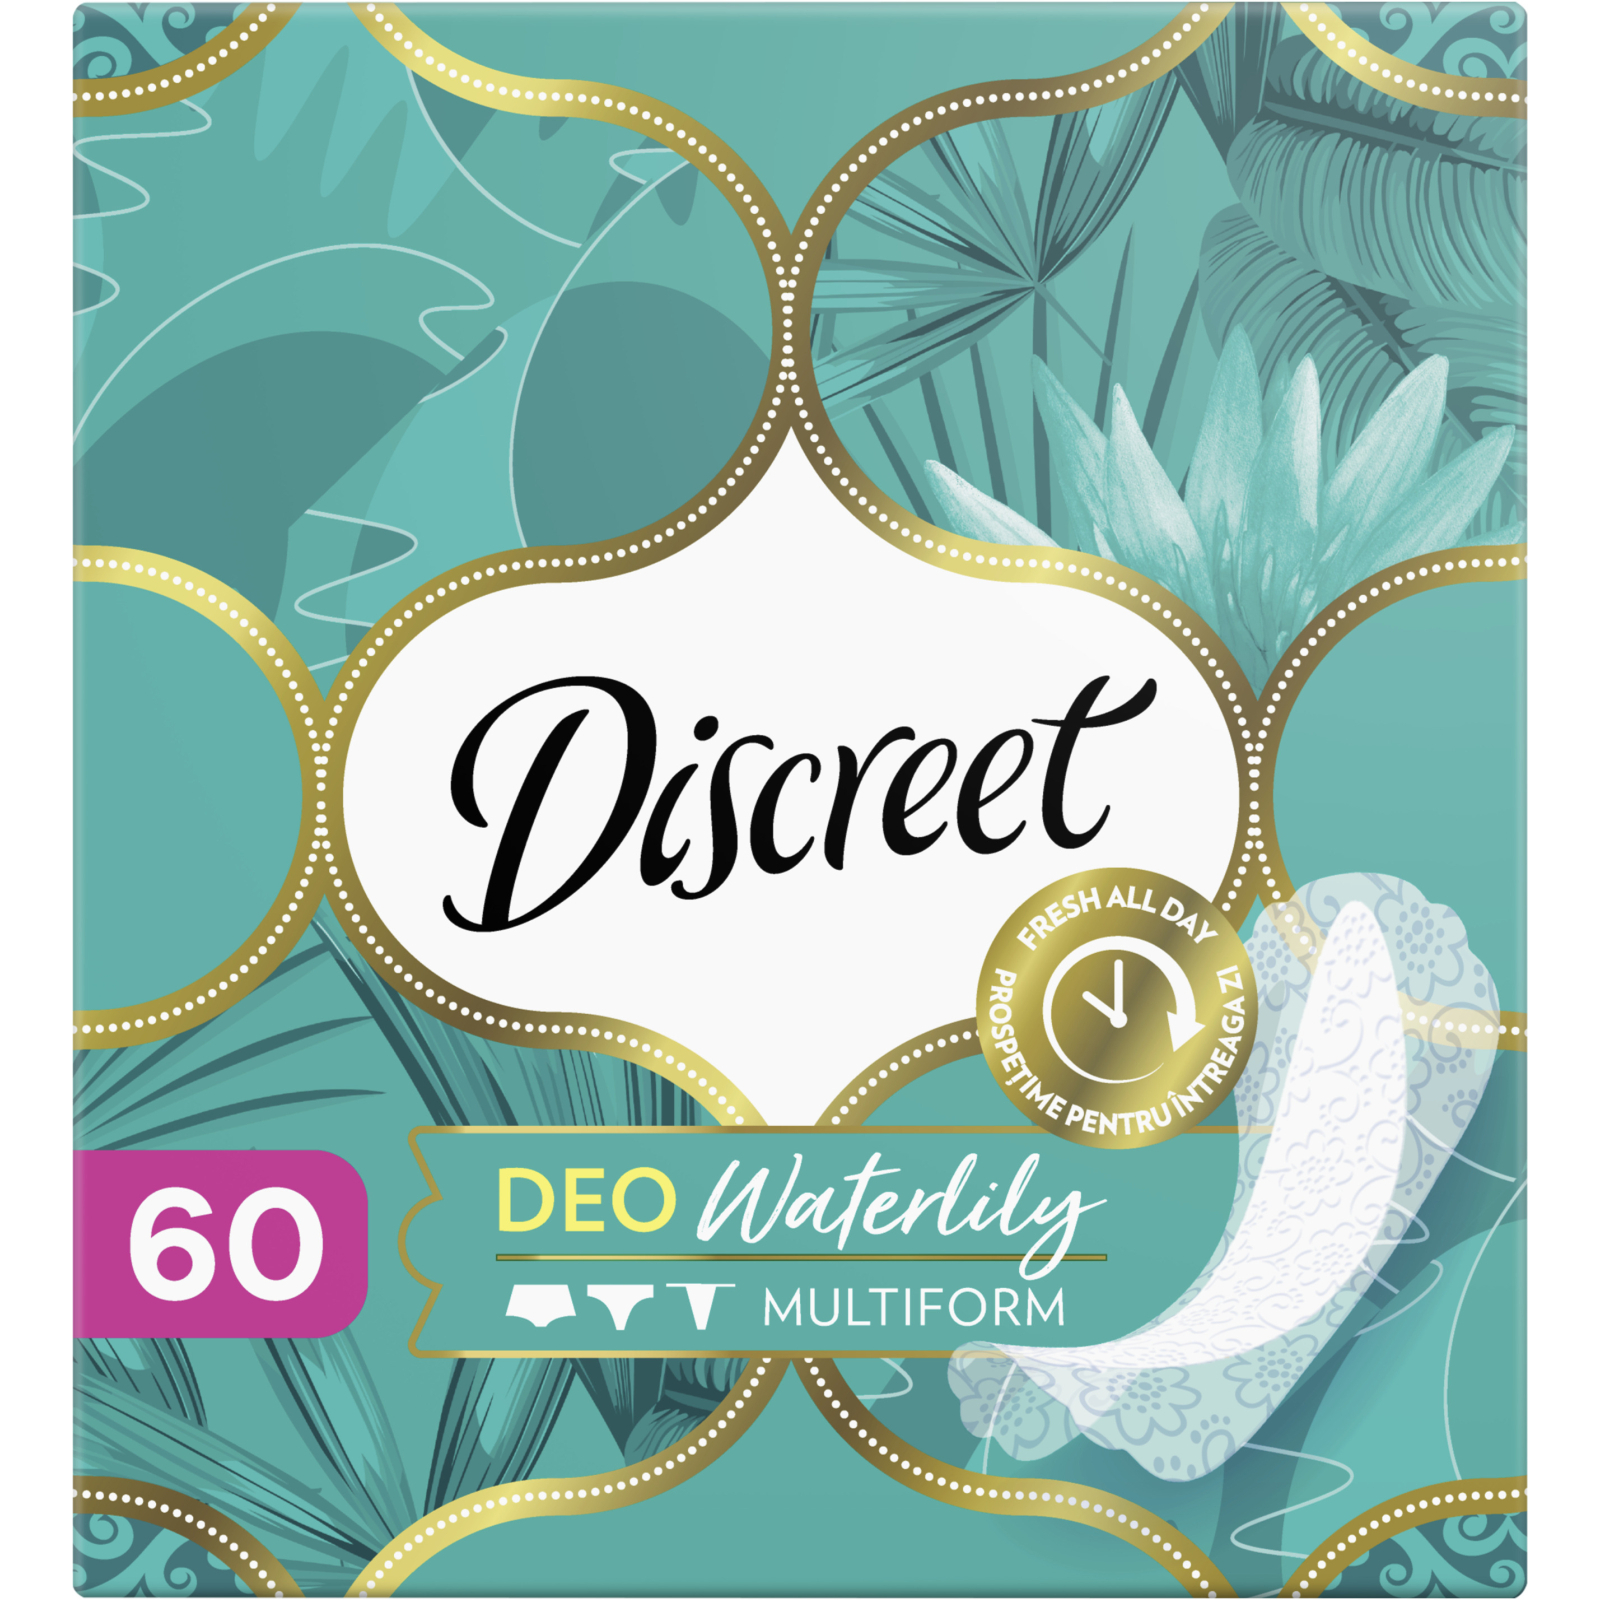 Ежедневные прокладки Discreet Deo Waterlily 120 шт. (8700216234245) изображение 2